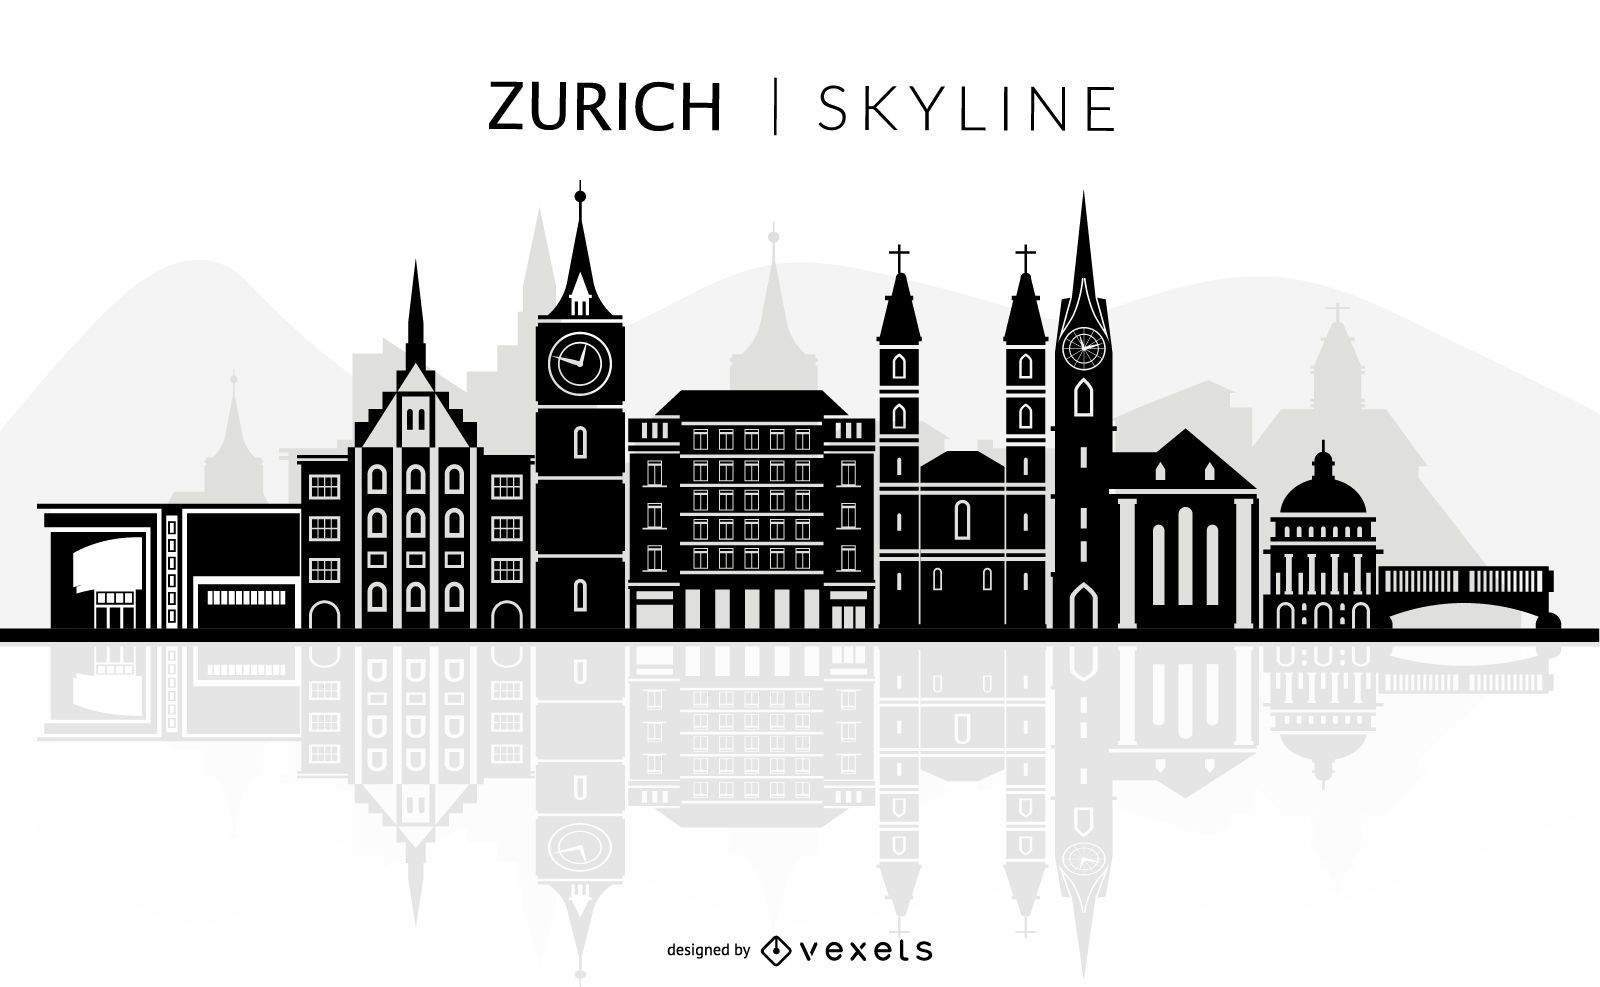 Zurich skyline silhouette